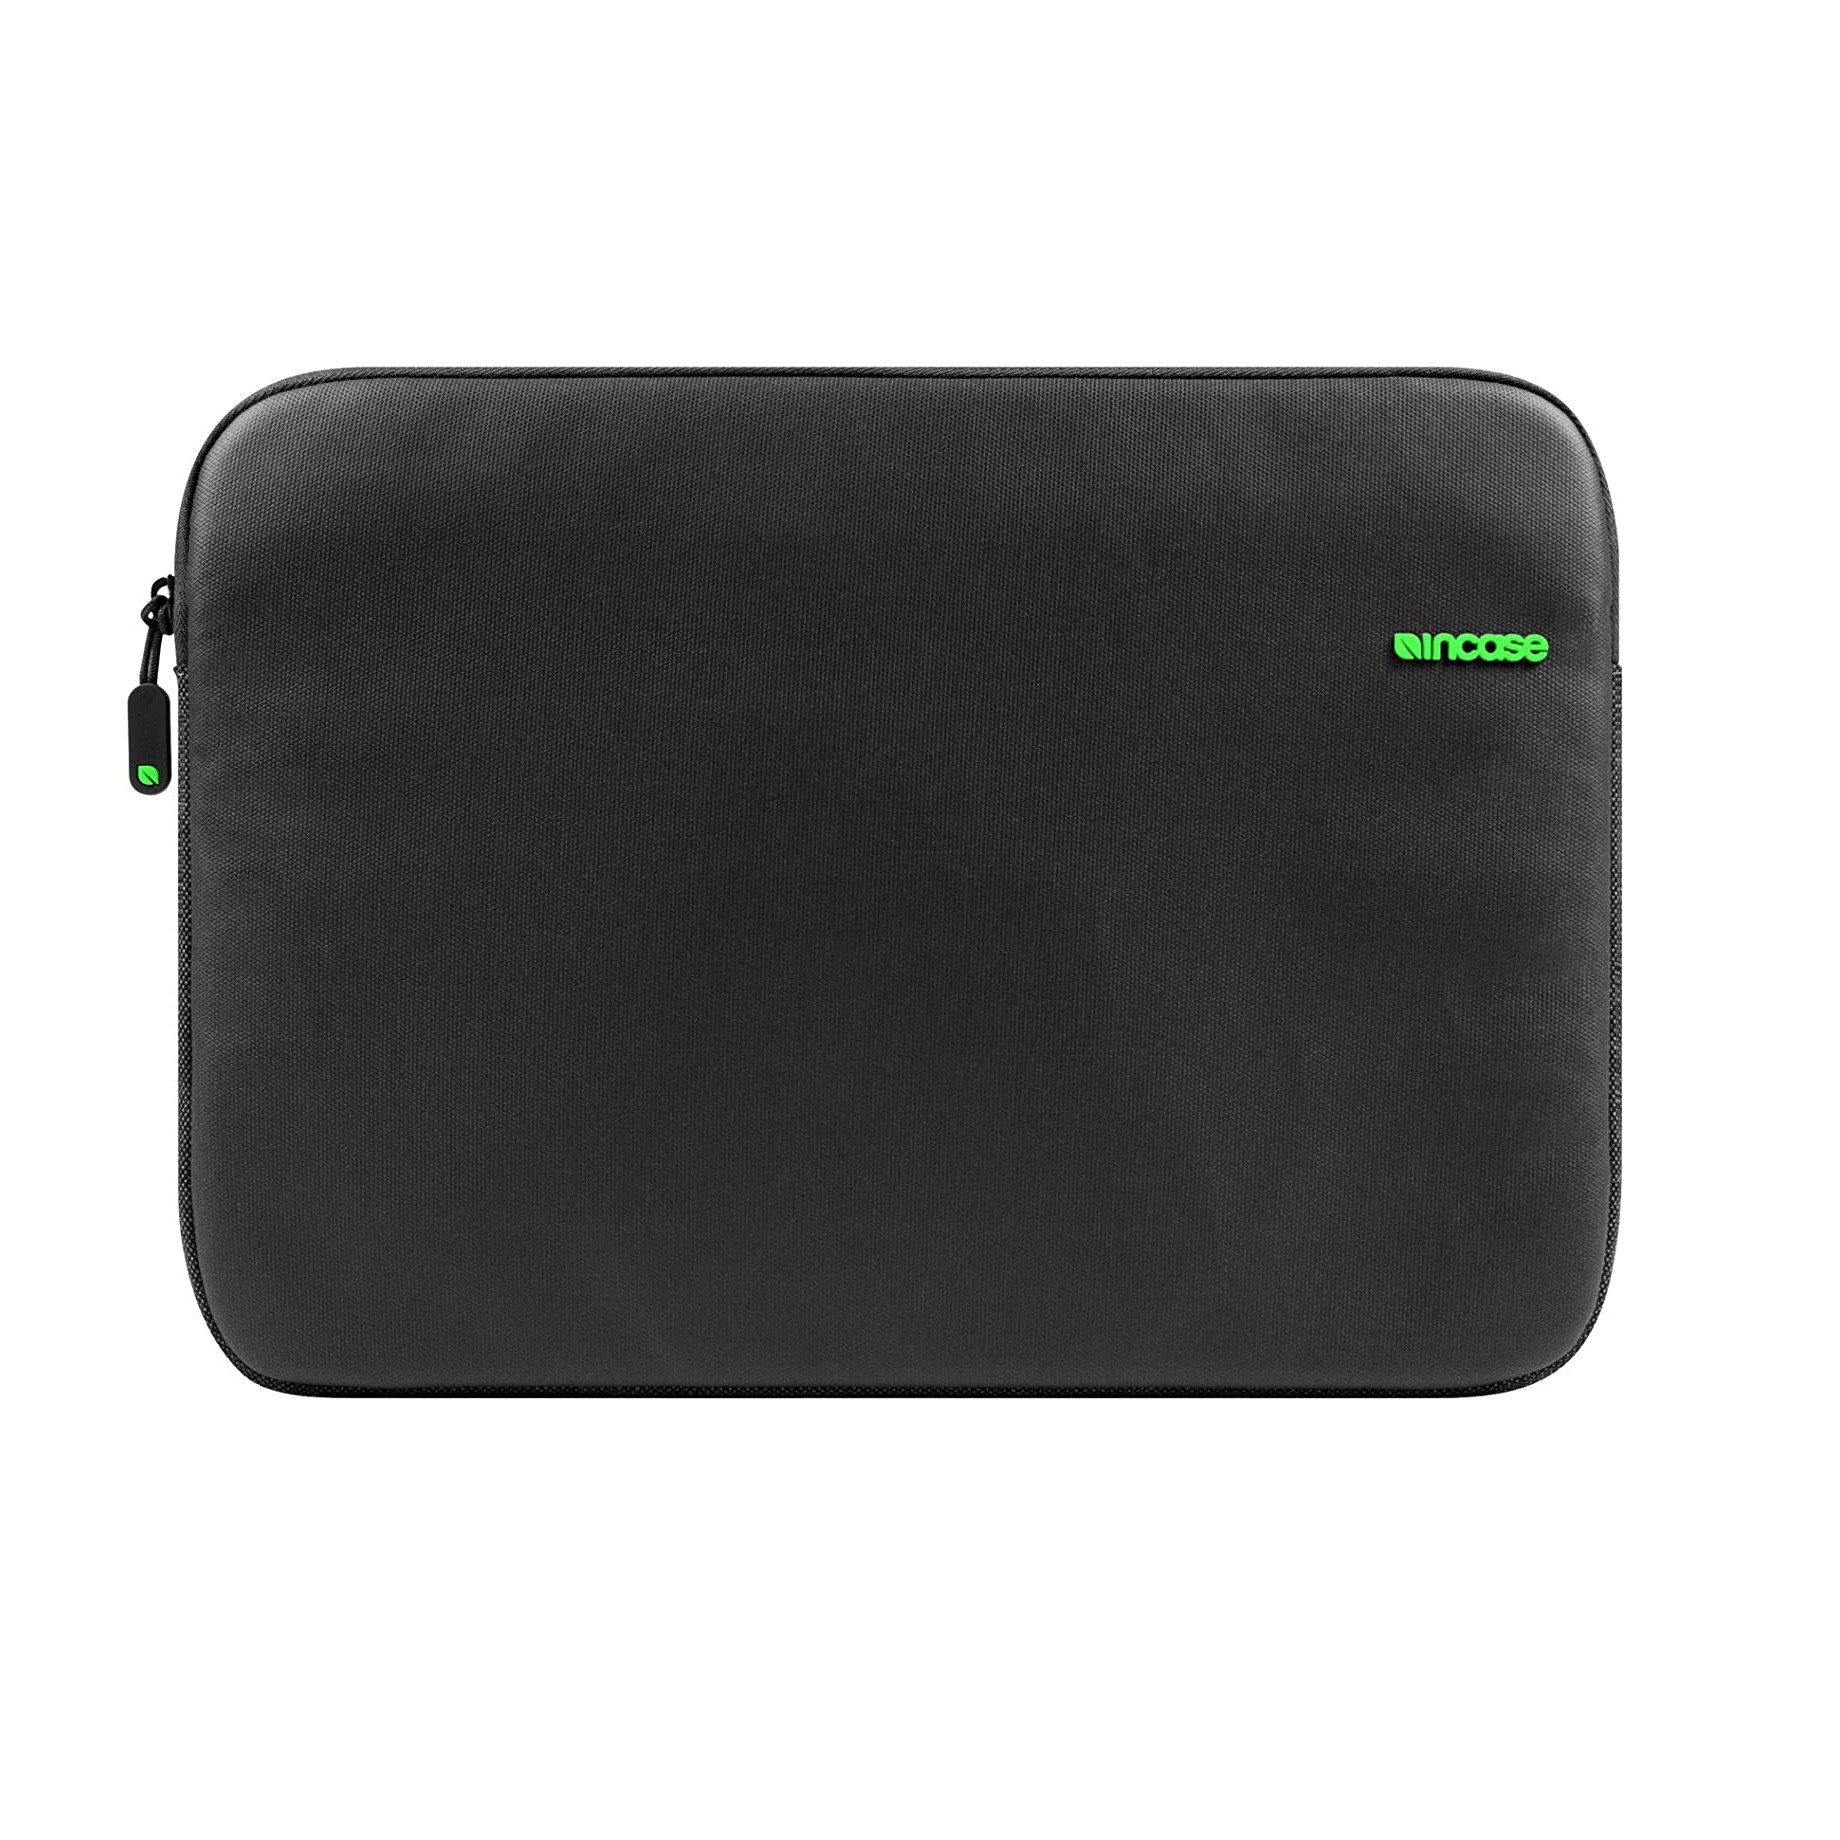 کیف لپ تاپ اینکیس مدل City Sleeve مناسب برای مک بوک 13 اینچی